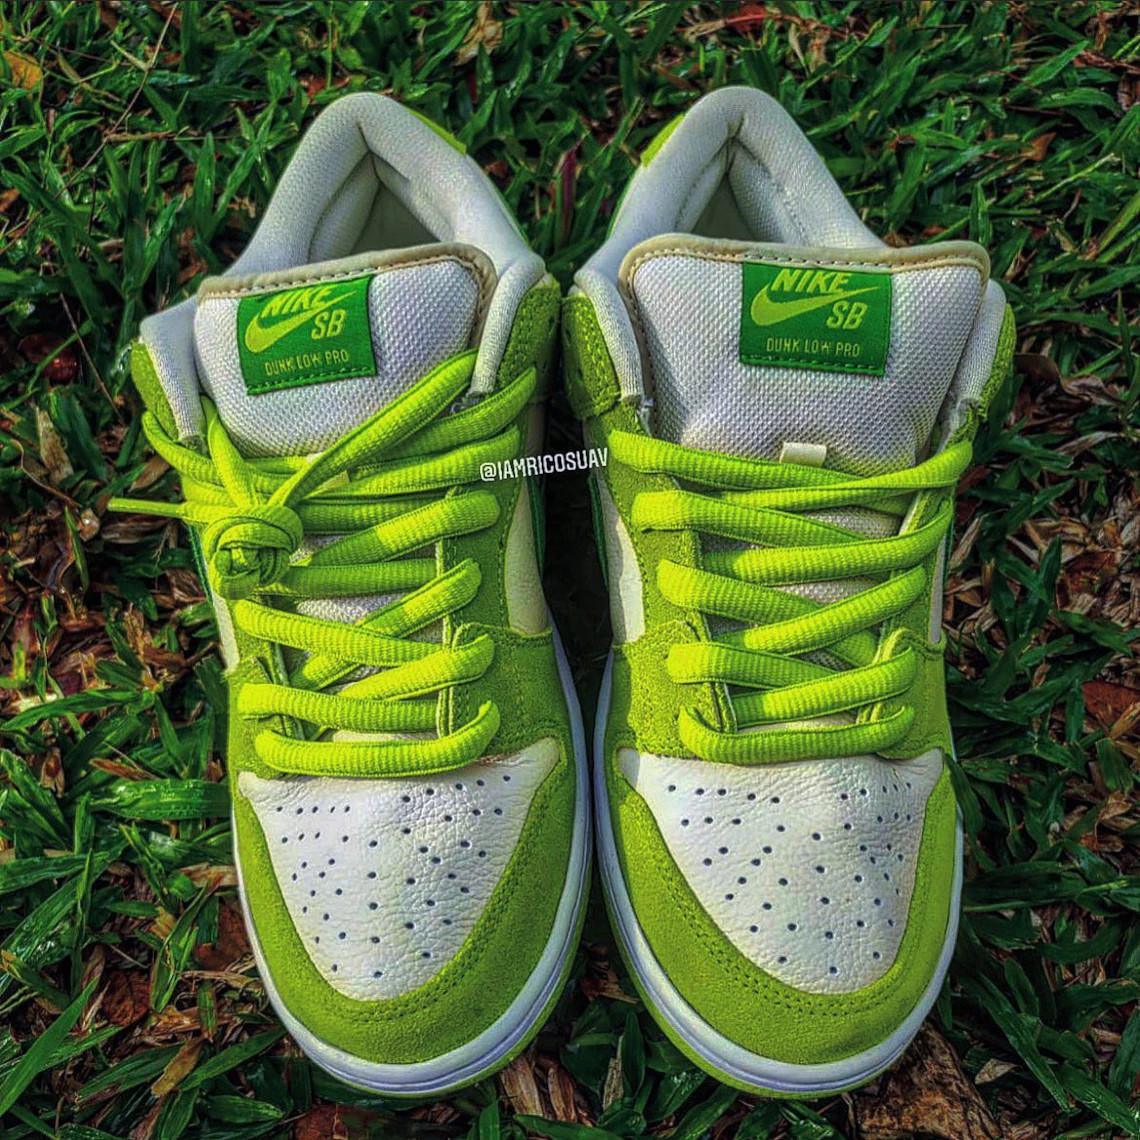 Le "Fruity Pack" de Nike SB comprend une Dunk Low "Green Apple".